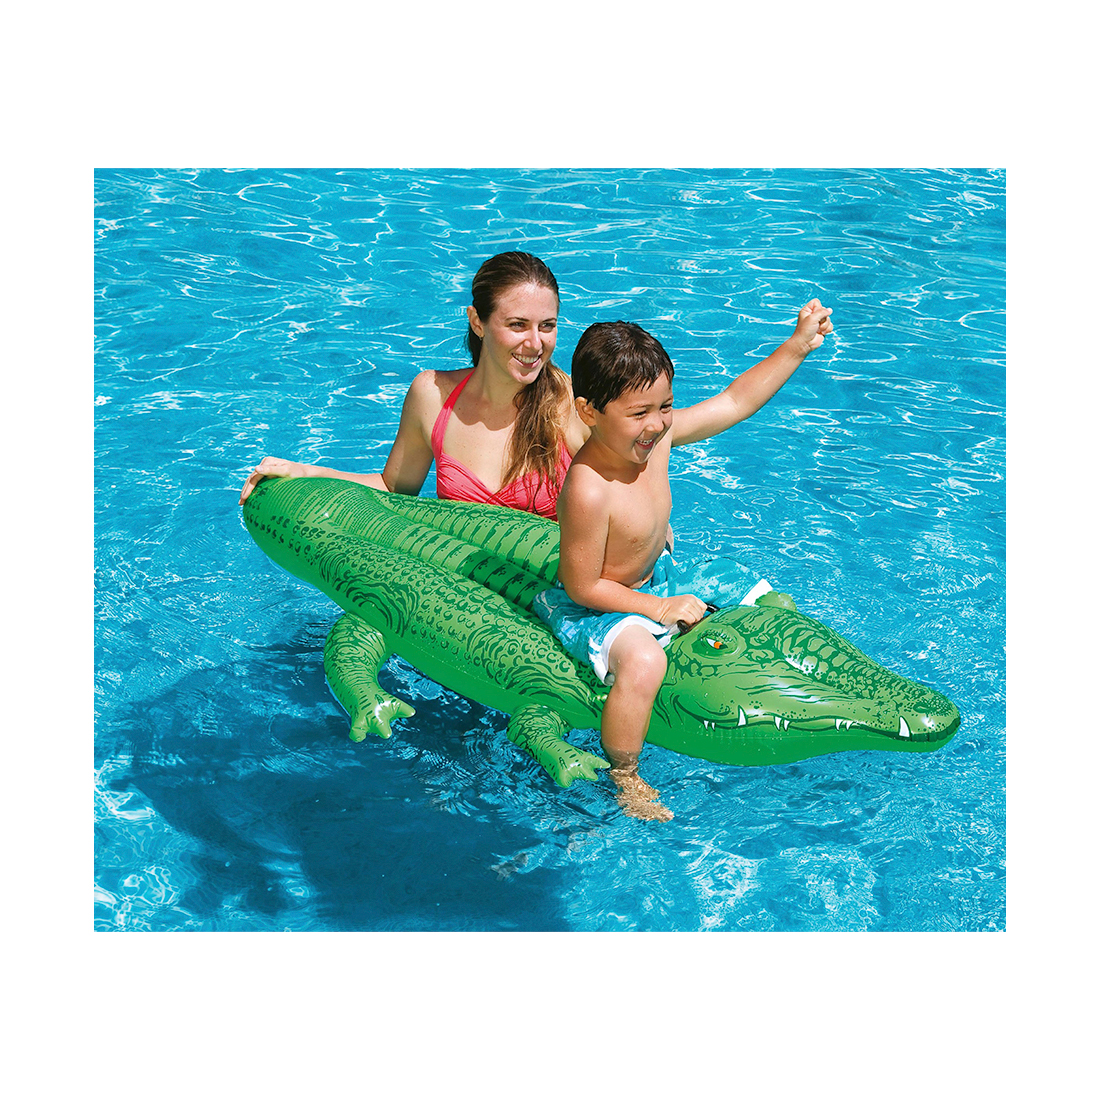 Надувная игрушка Intex 58546NP в форме крокодила для плавания